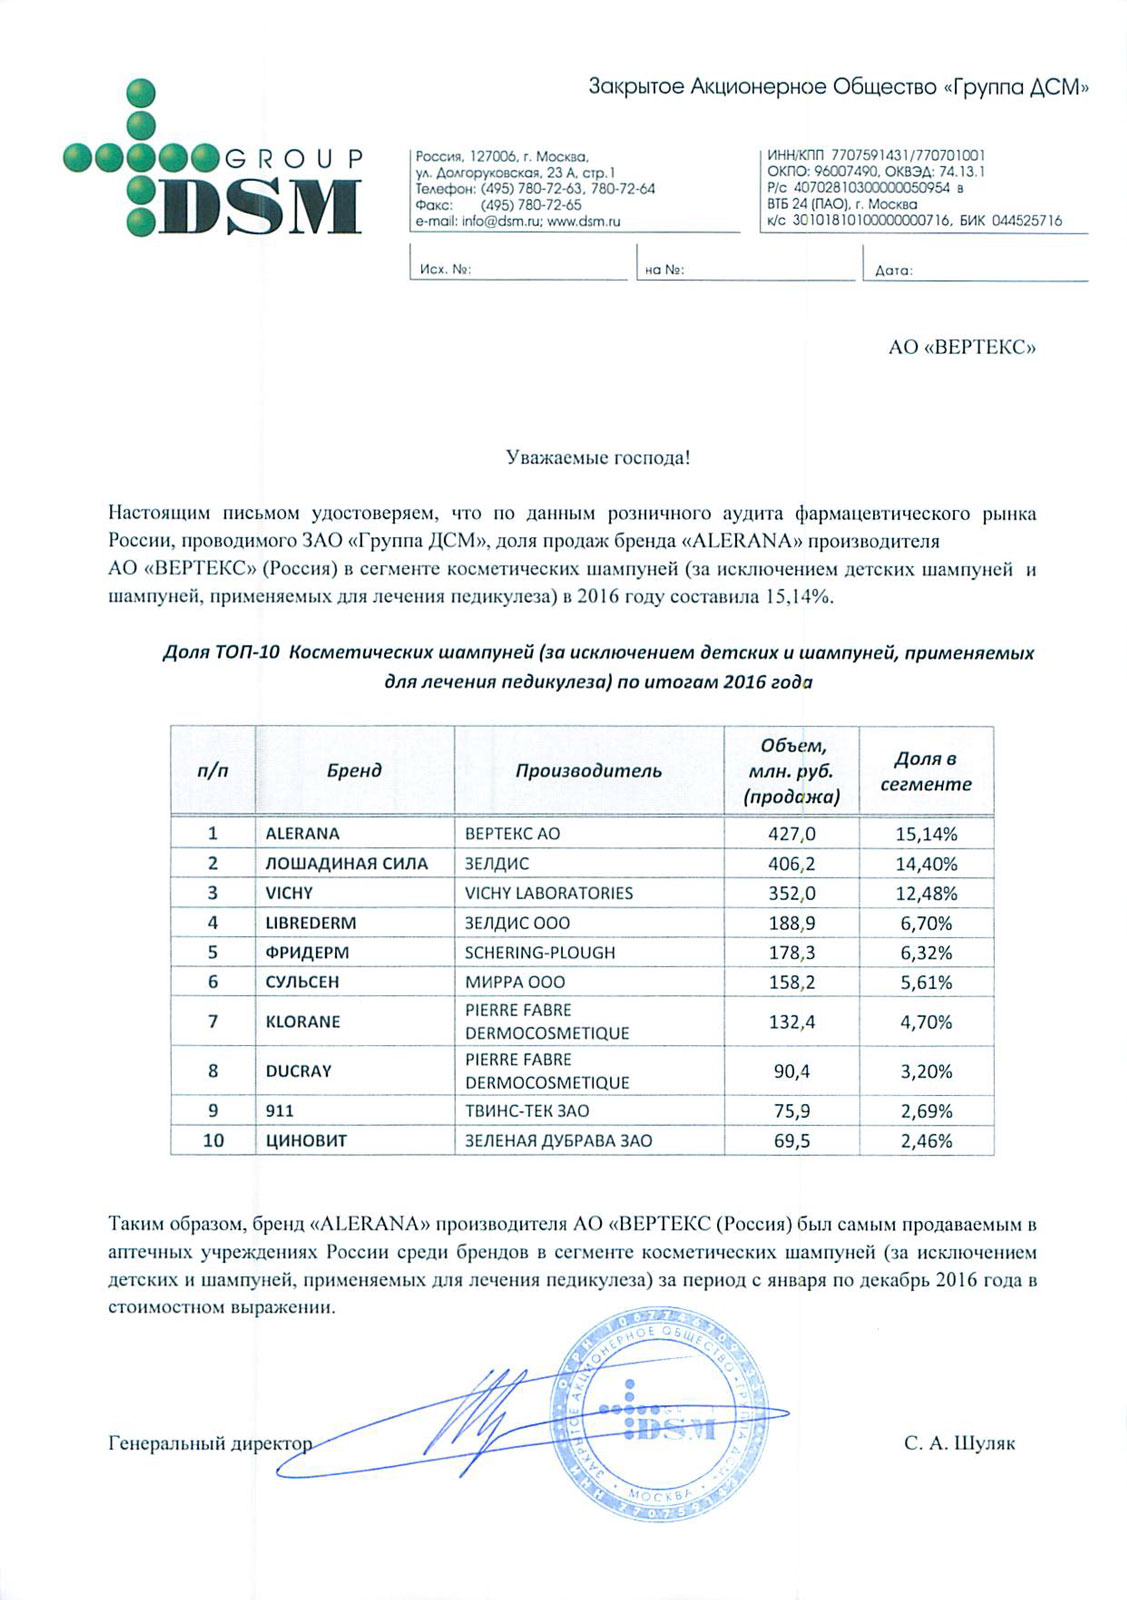 Рейтинги DSM Group, 2016 г.: лидерство АО "ВЕРТЕКС" среди быстрорастущих фармпроизводителей в РФ, лидерство бренда ALERANA в двух сегментах